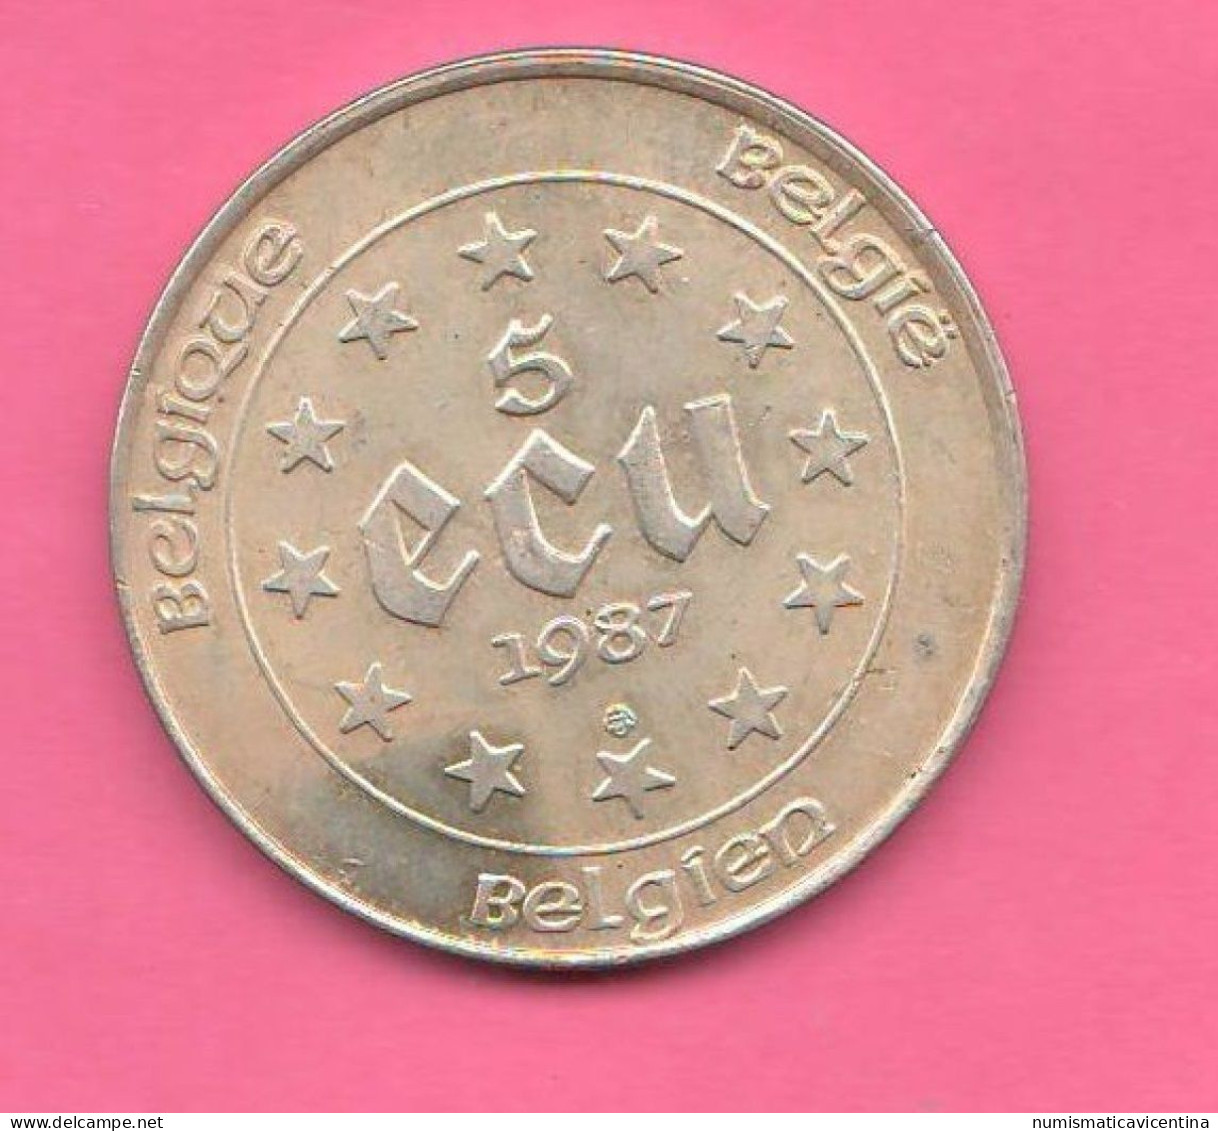 Belgie 5  ECU 1987 Trade Coinage Belgio Silver Coin Belgique  Belgium - Ecus